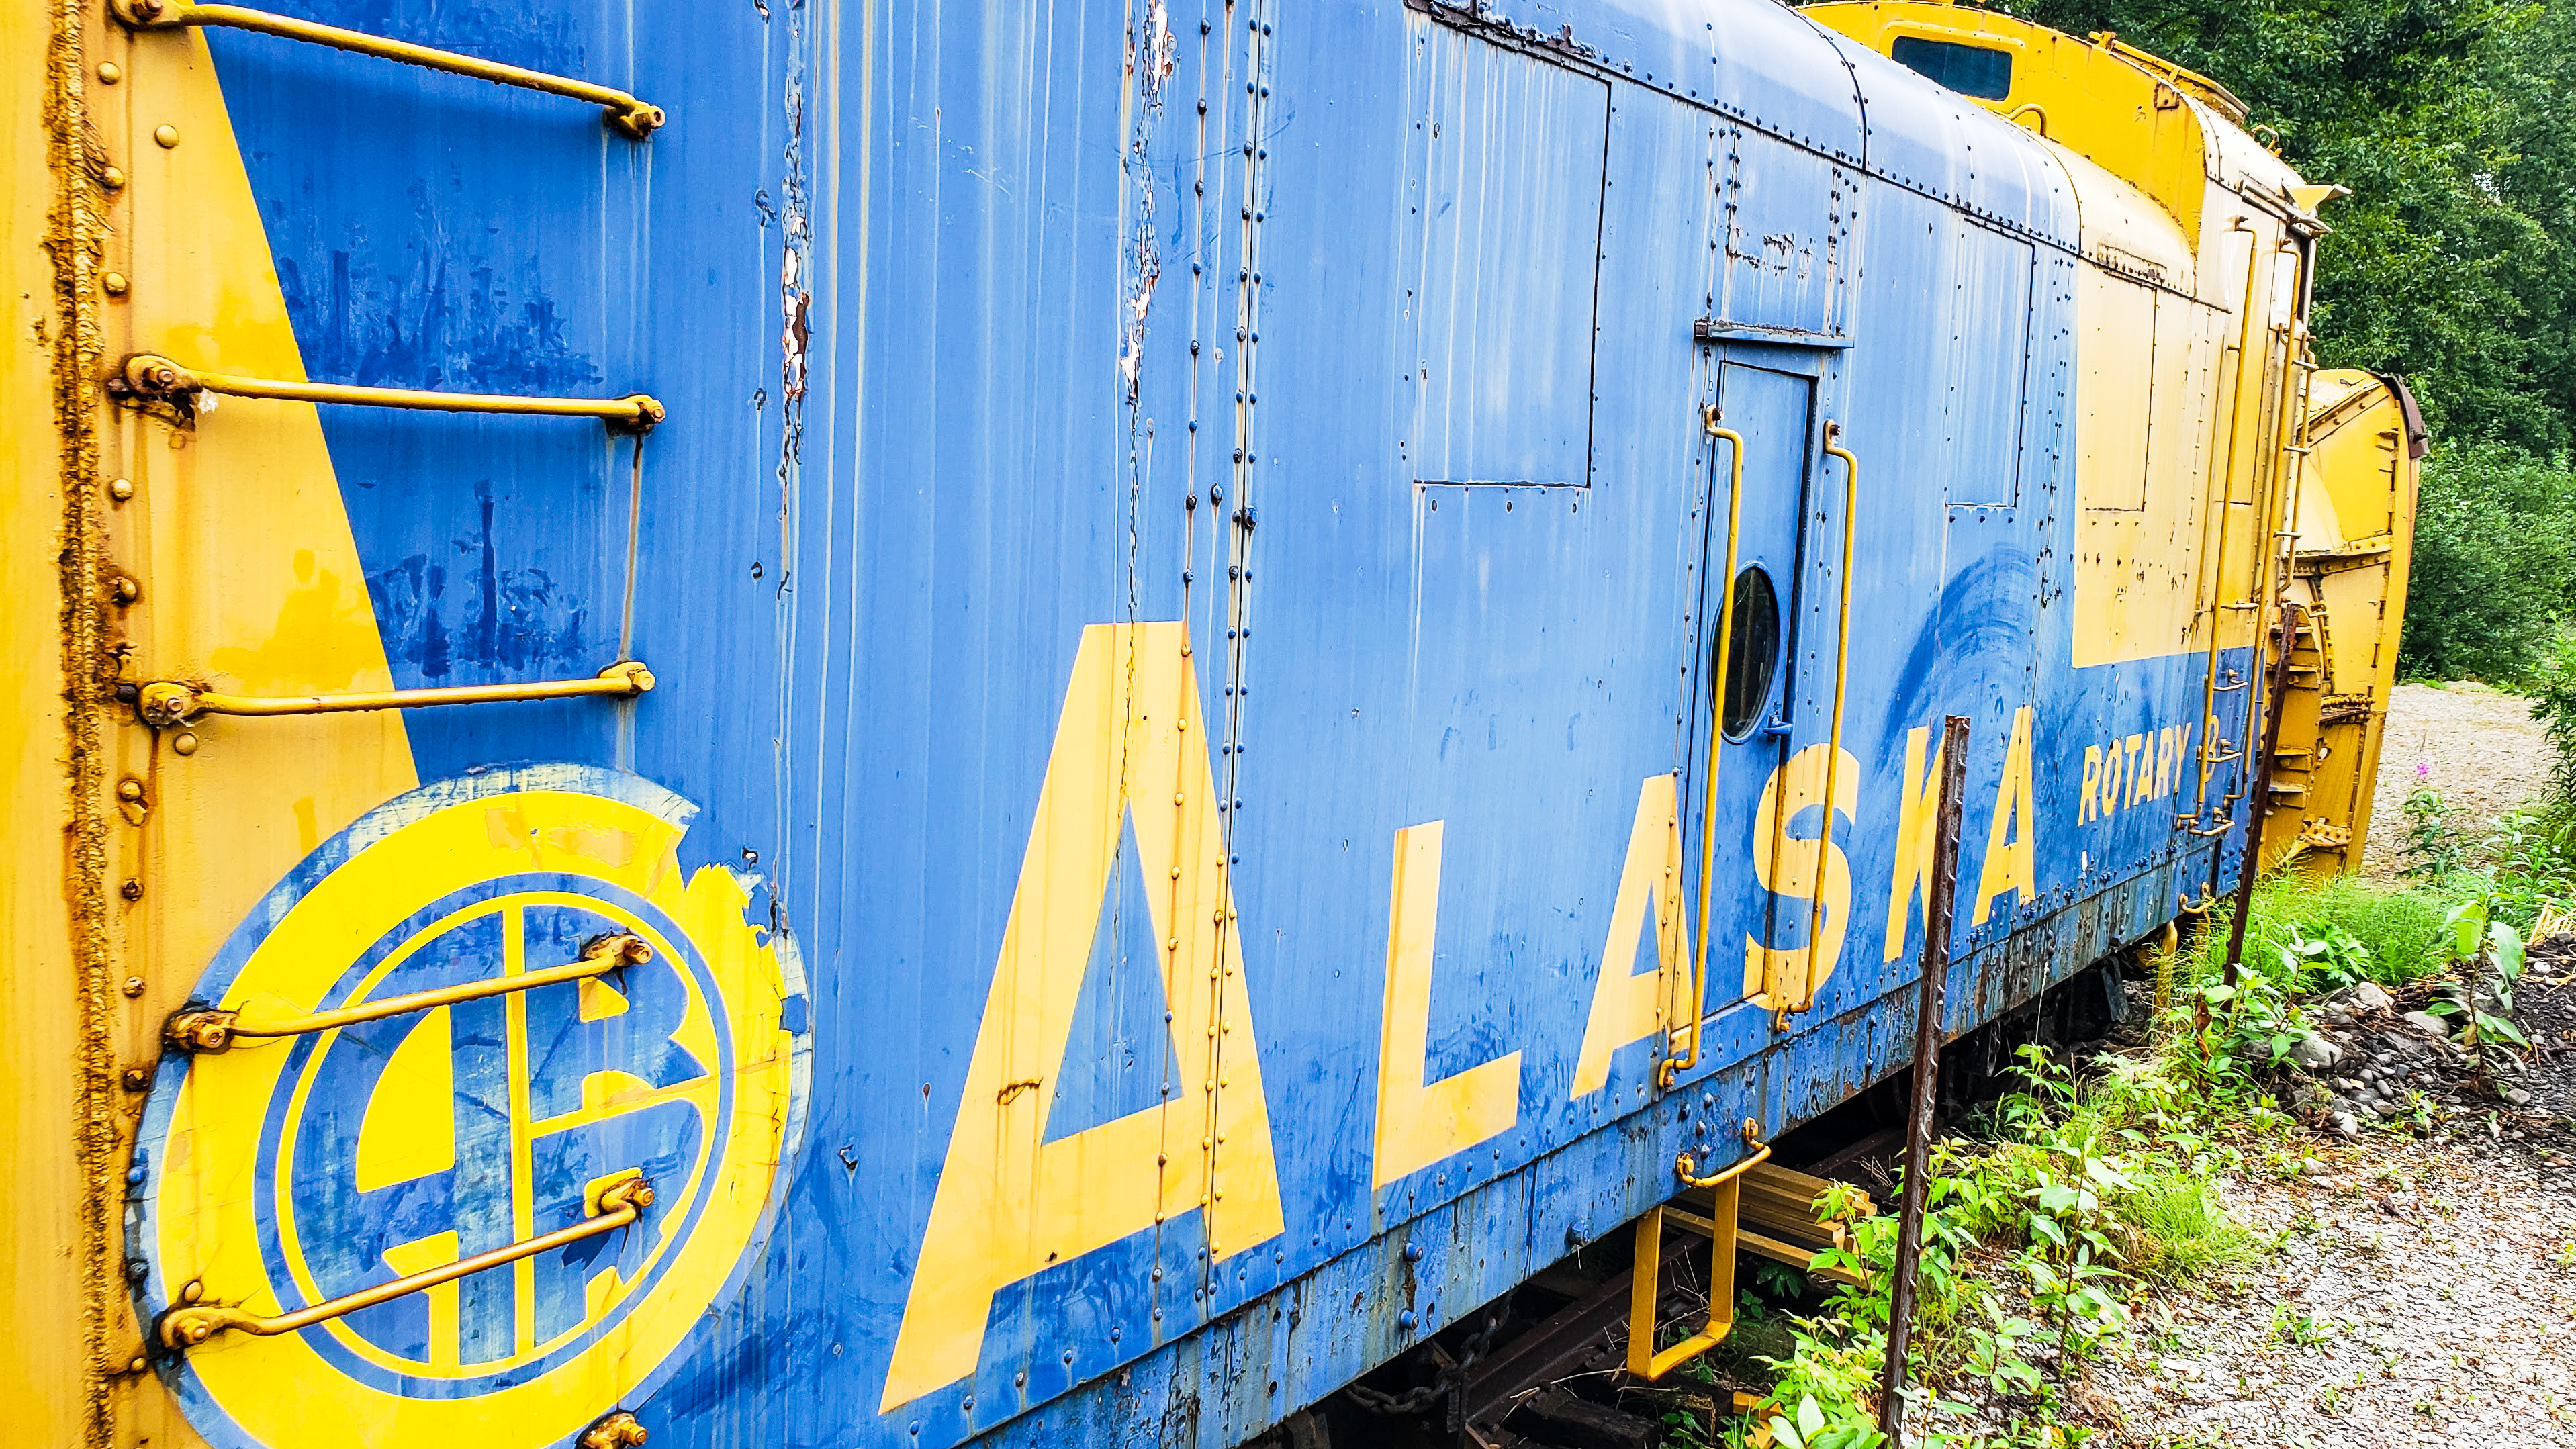 All Aboard! The Alaska Railroad!